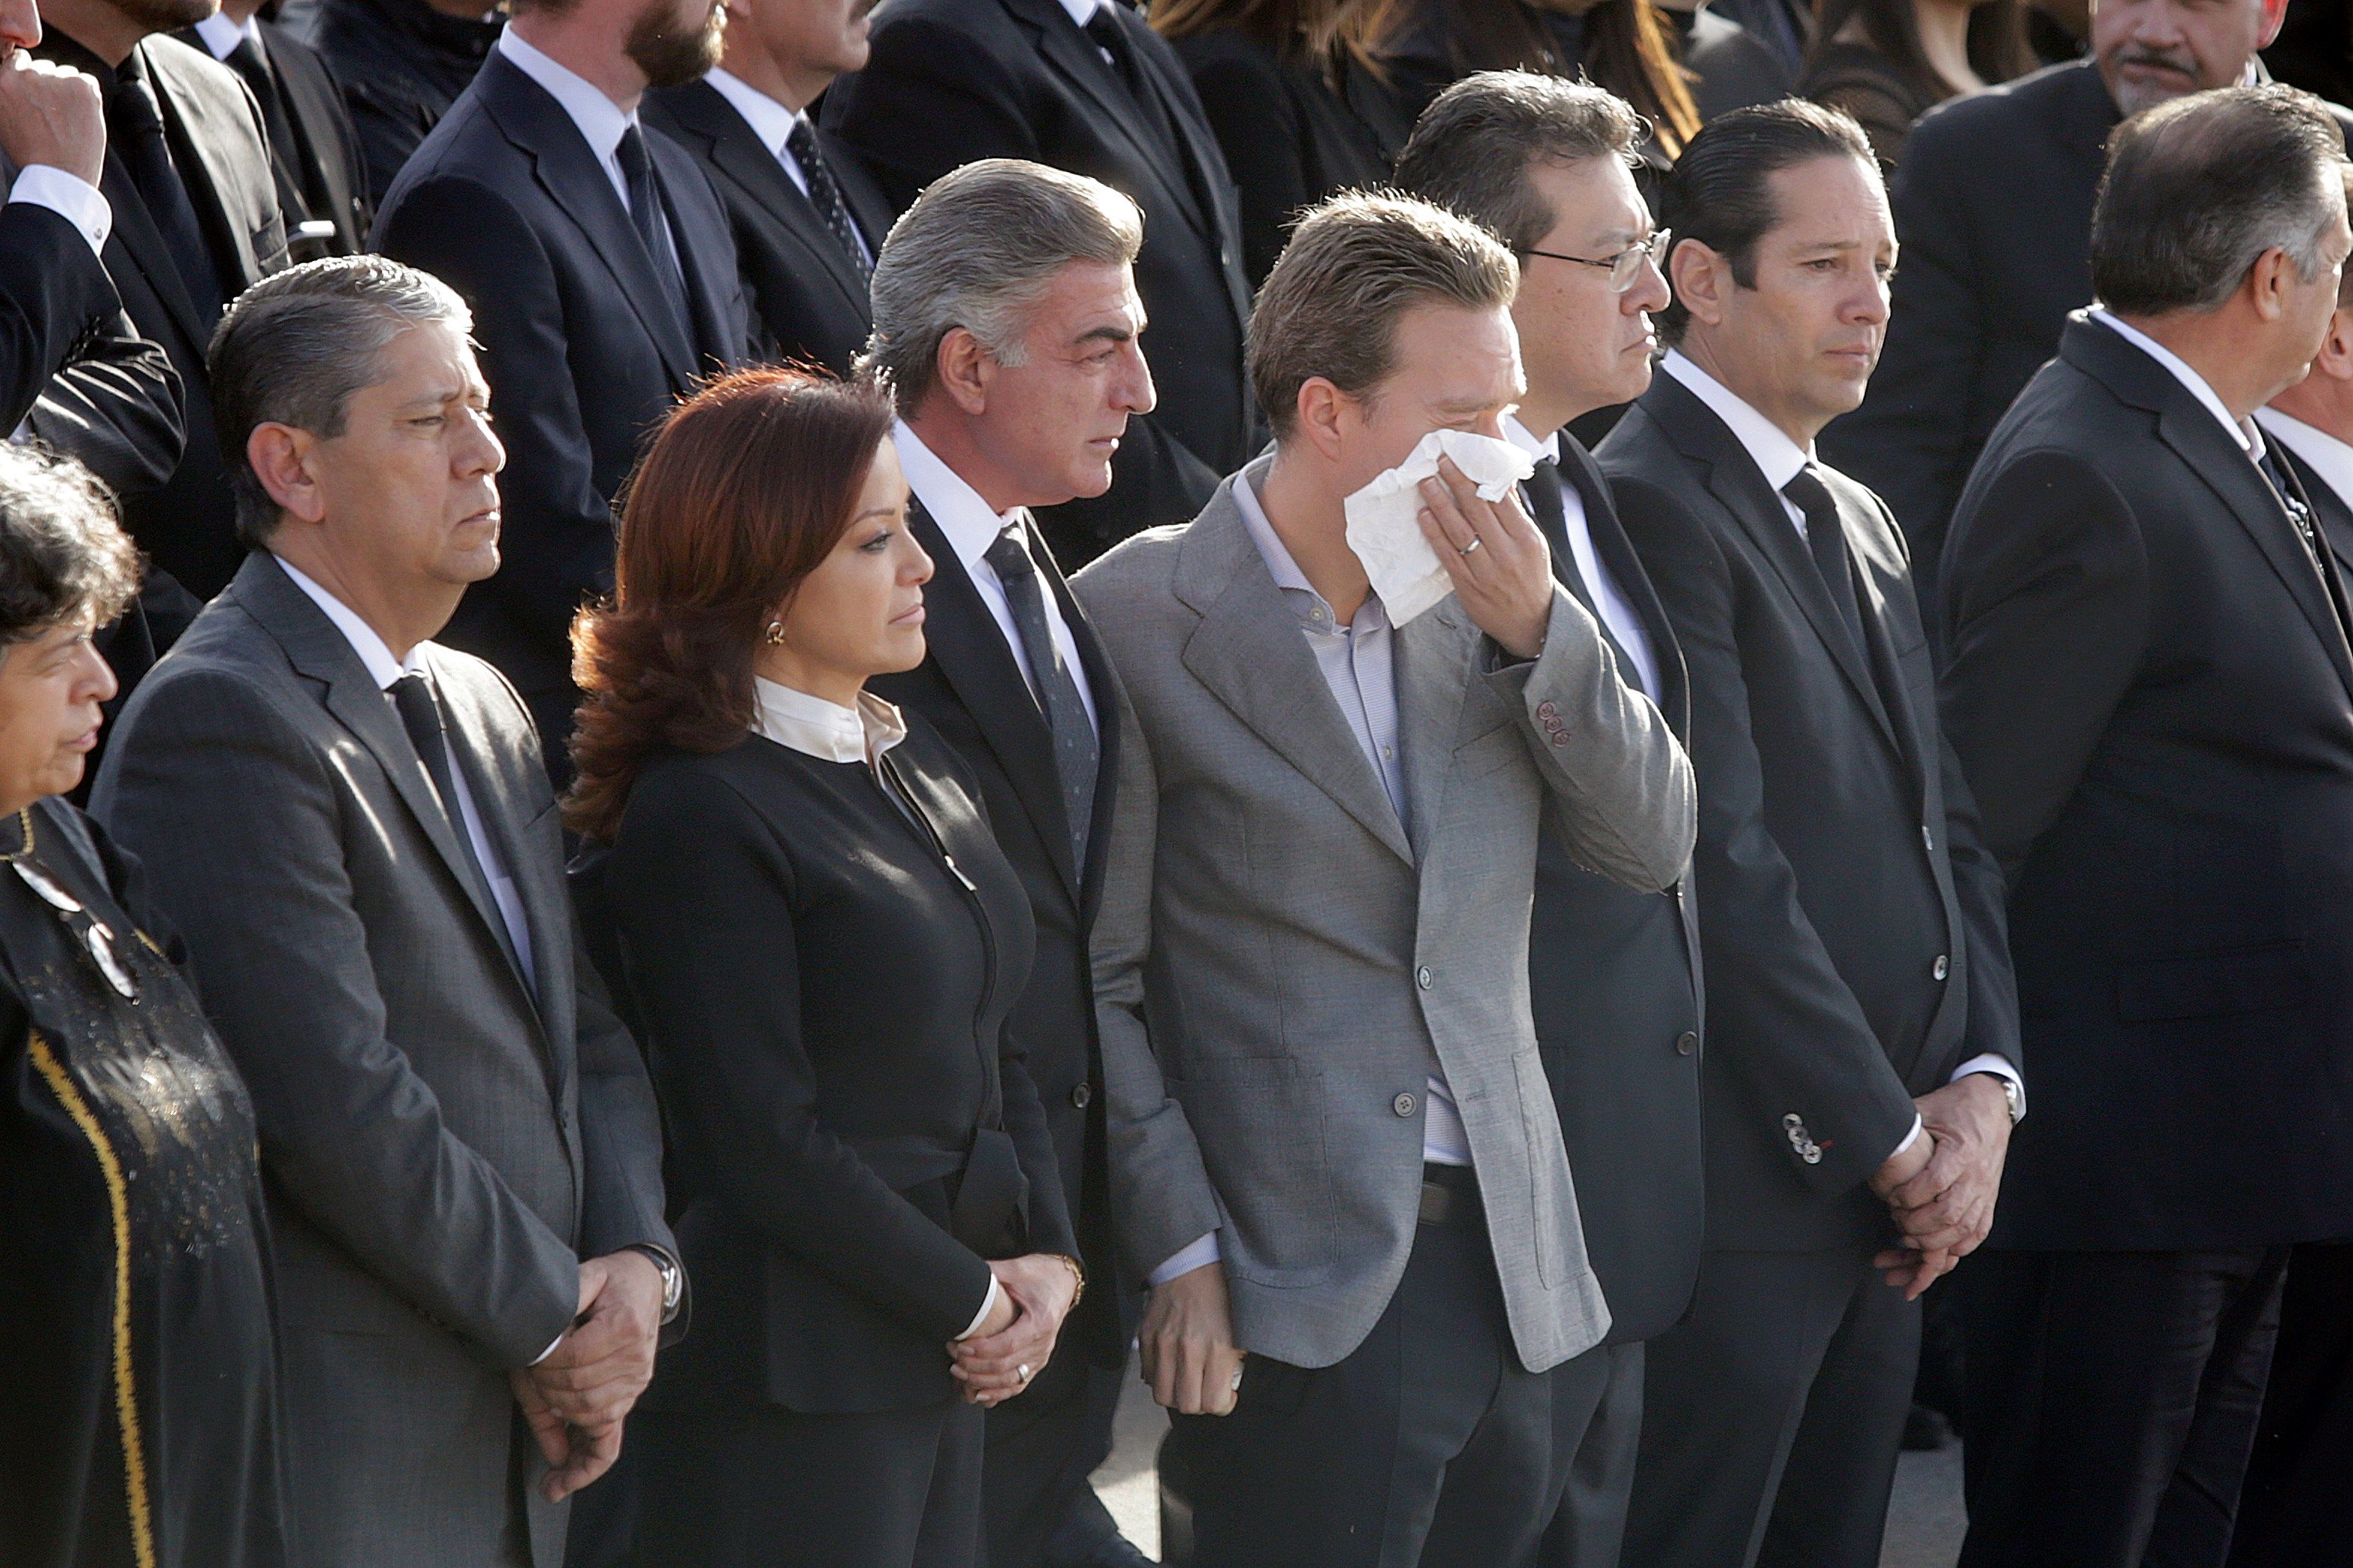  Despiden a gobernadora y senador mexicanos en politizado funeral de Estado